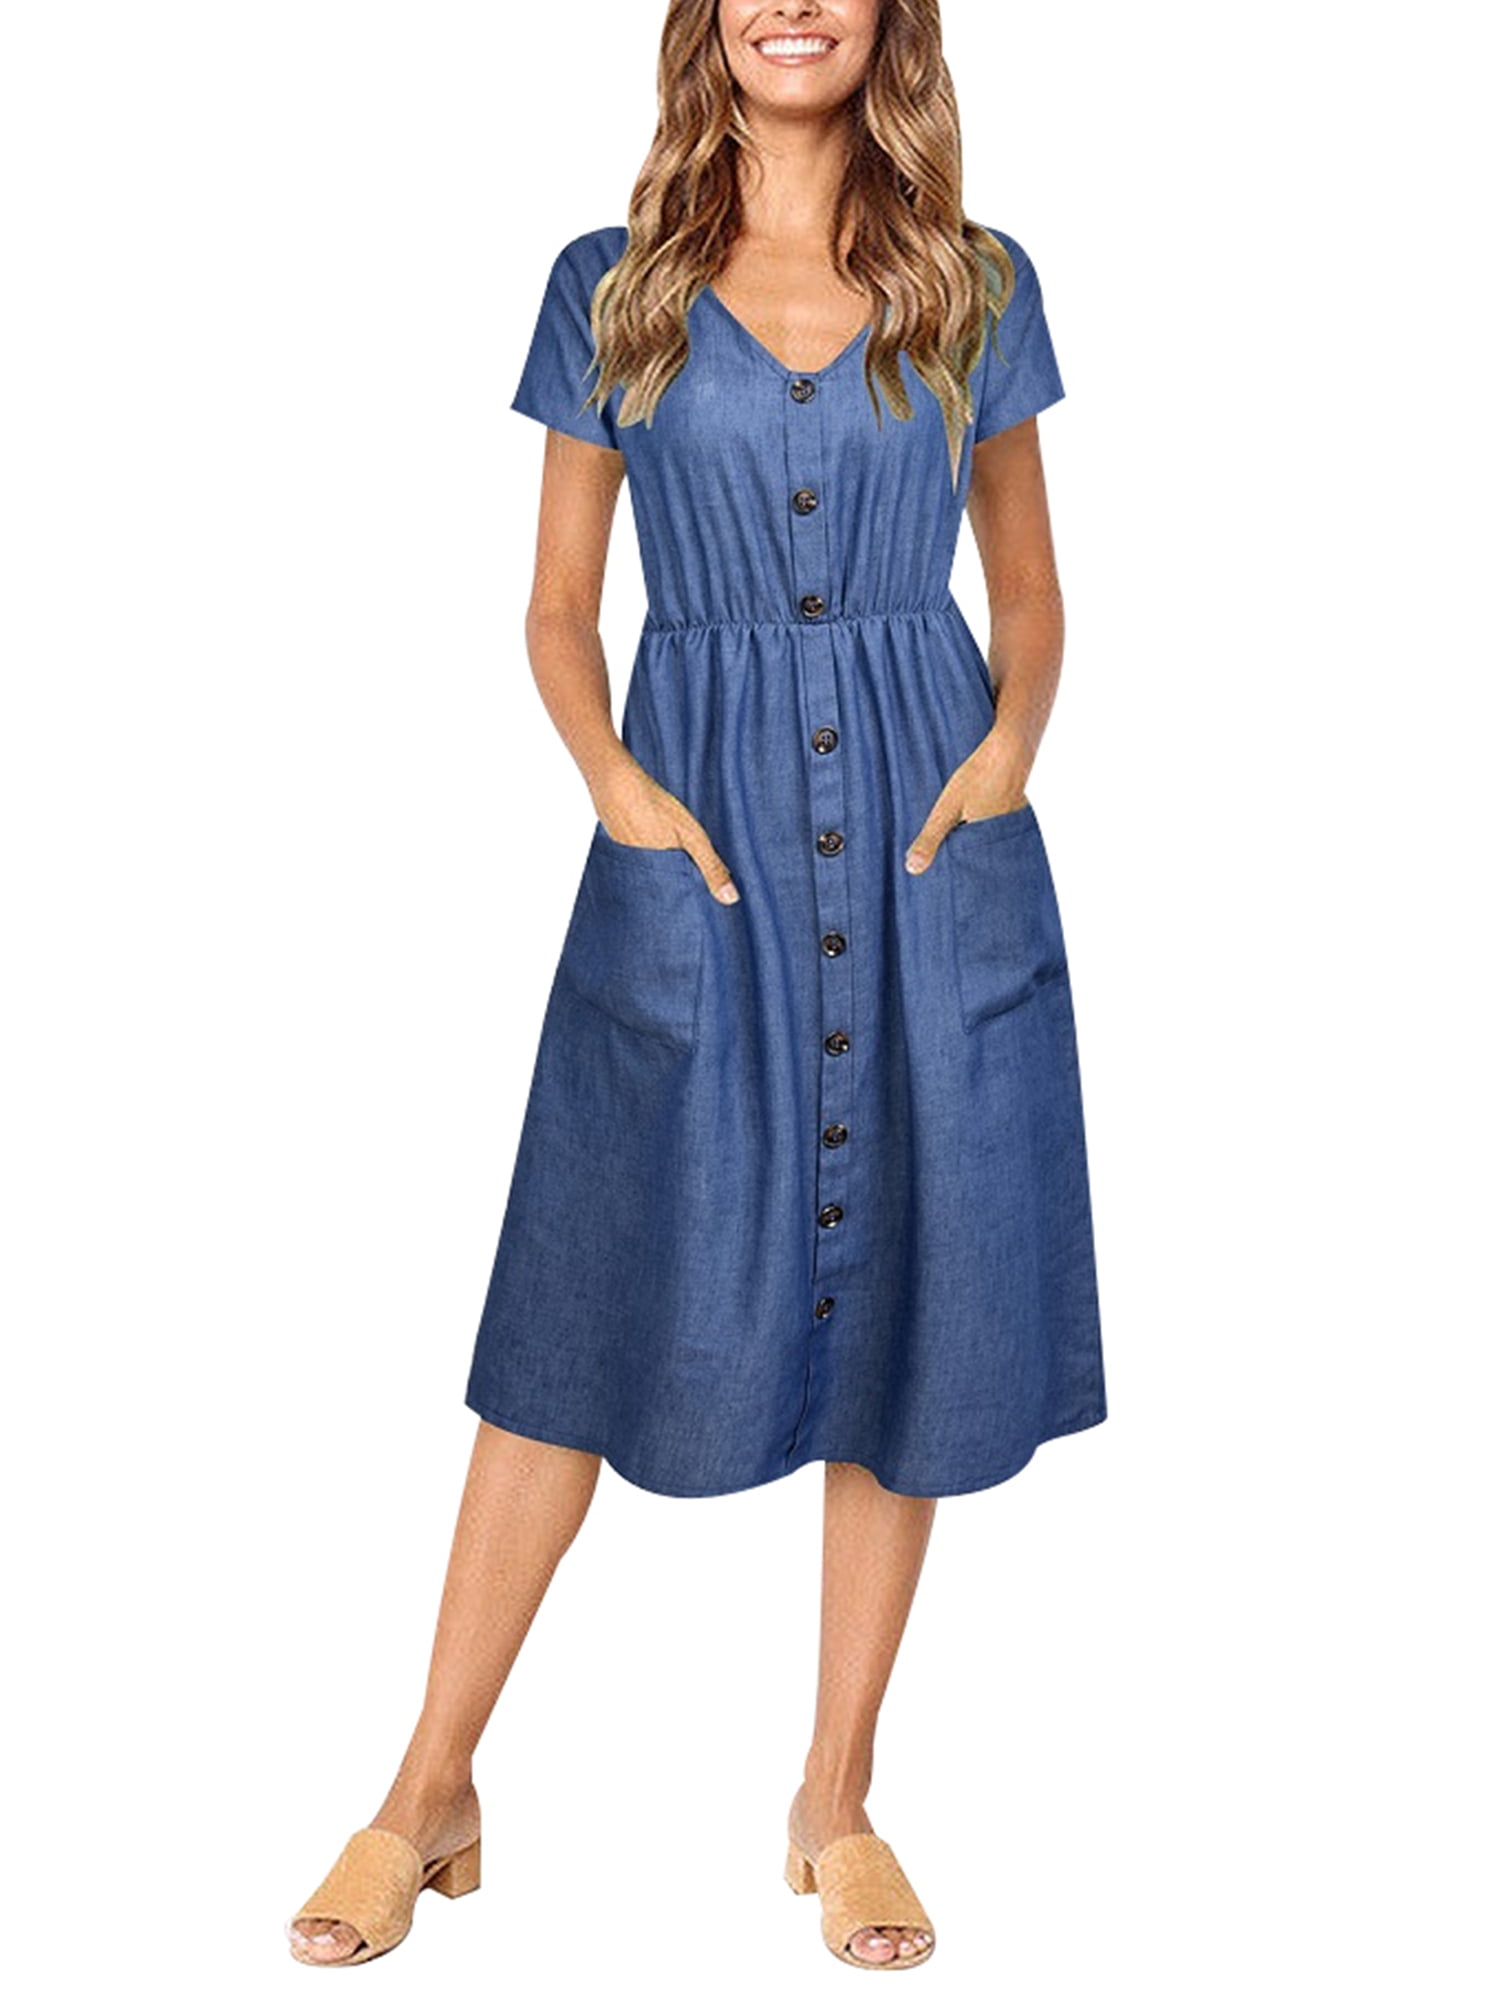 Verycand Women's Loose Short Sleeve Denim Button Dress - Walmart.com